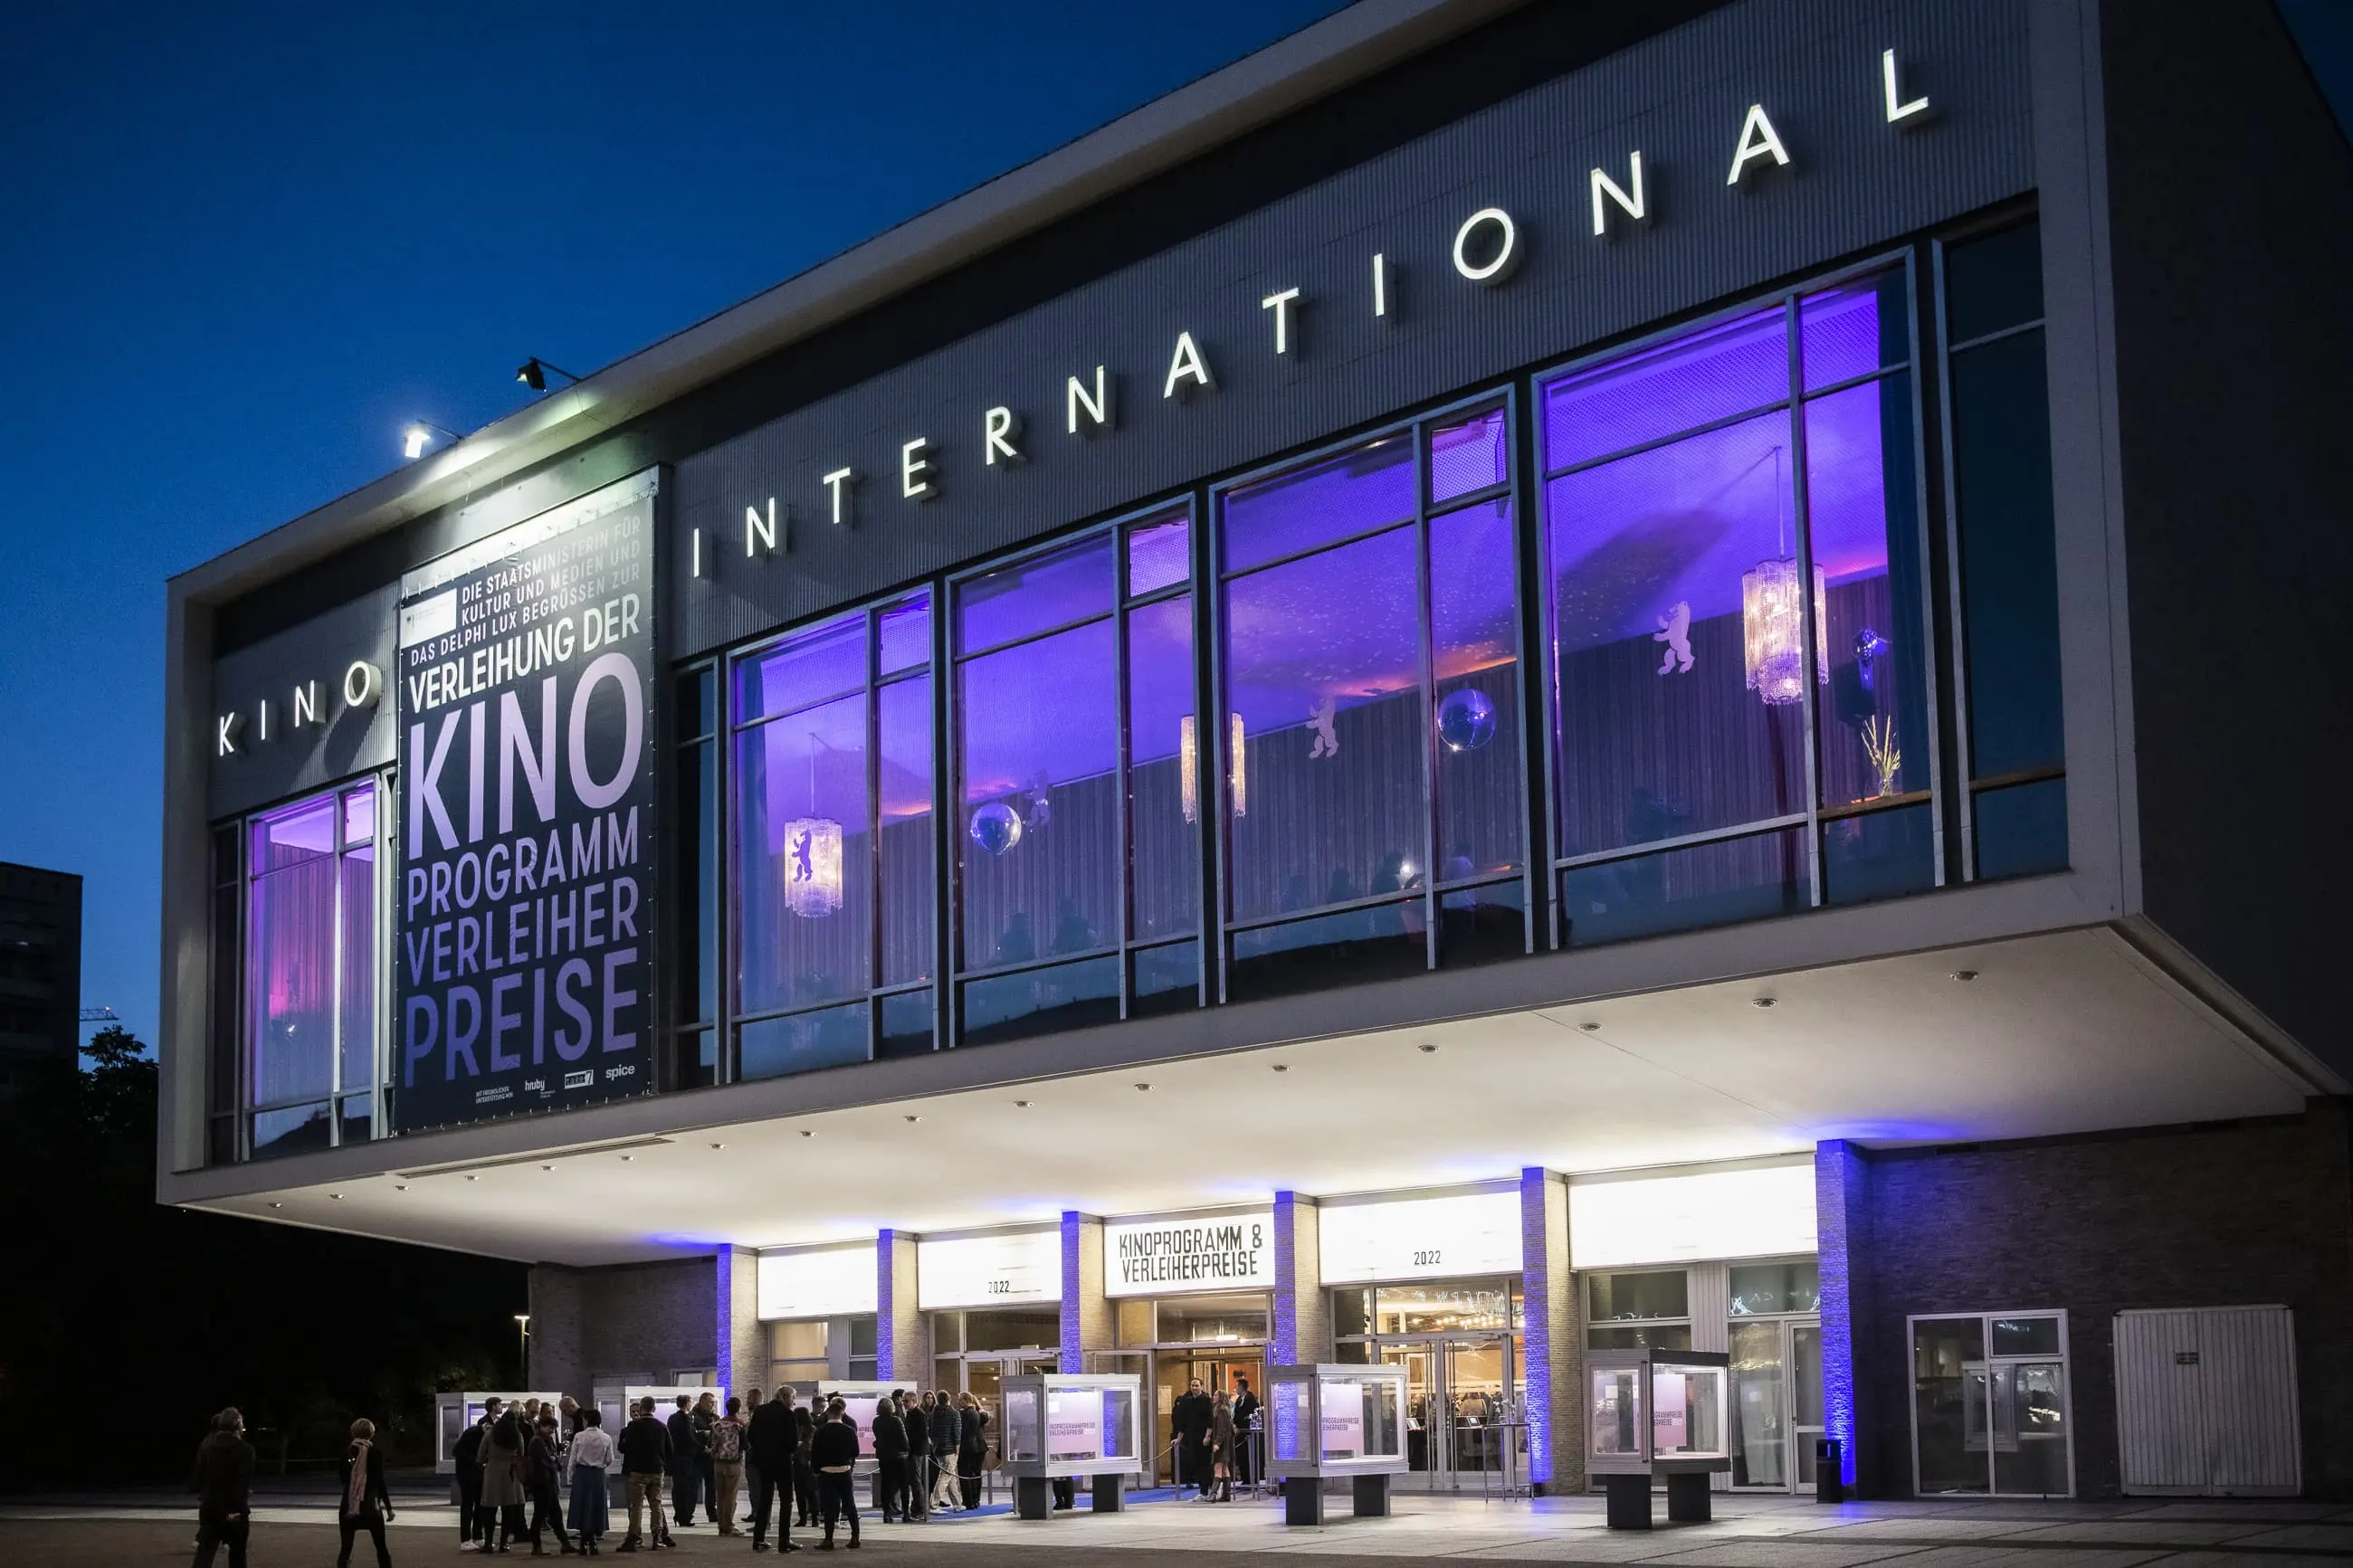 Das Berliner Kino International am Abend der Verleihung der Kinoprogramm- und Verleiherpreis